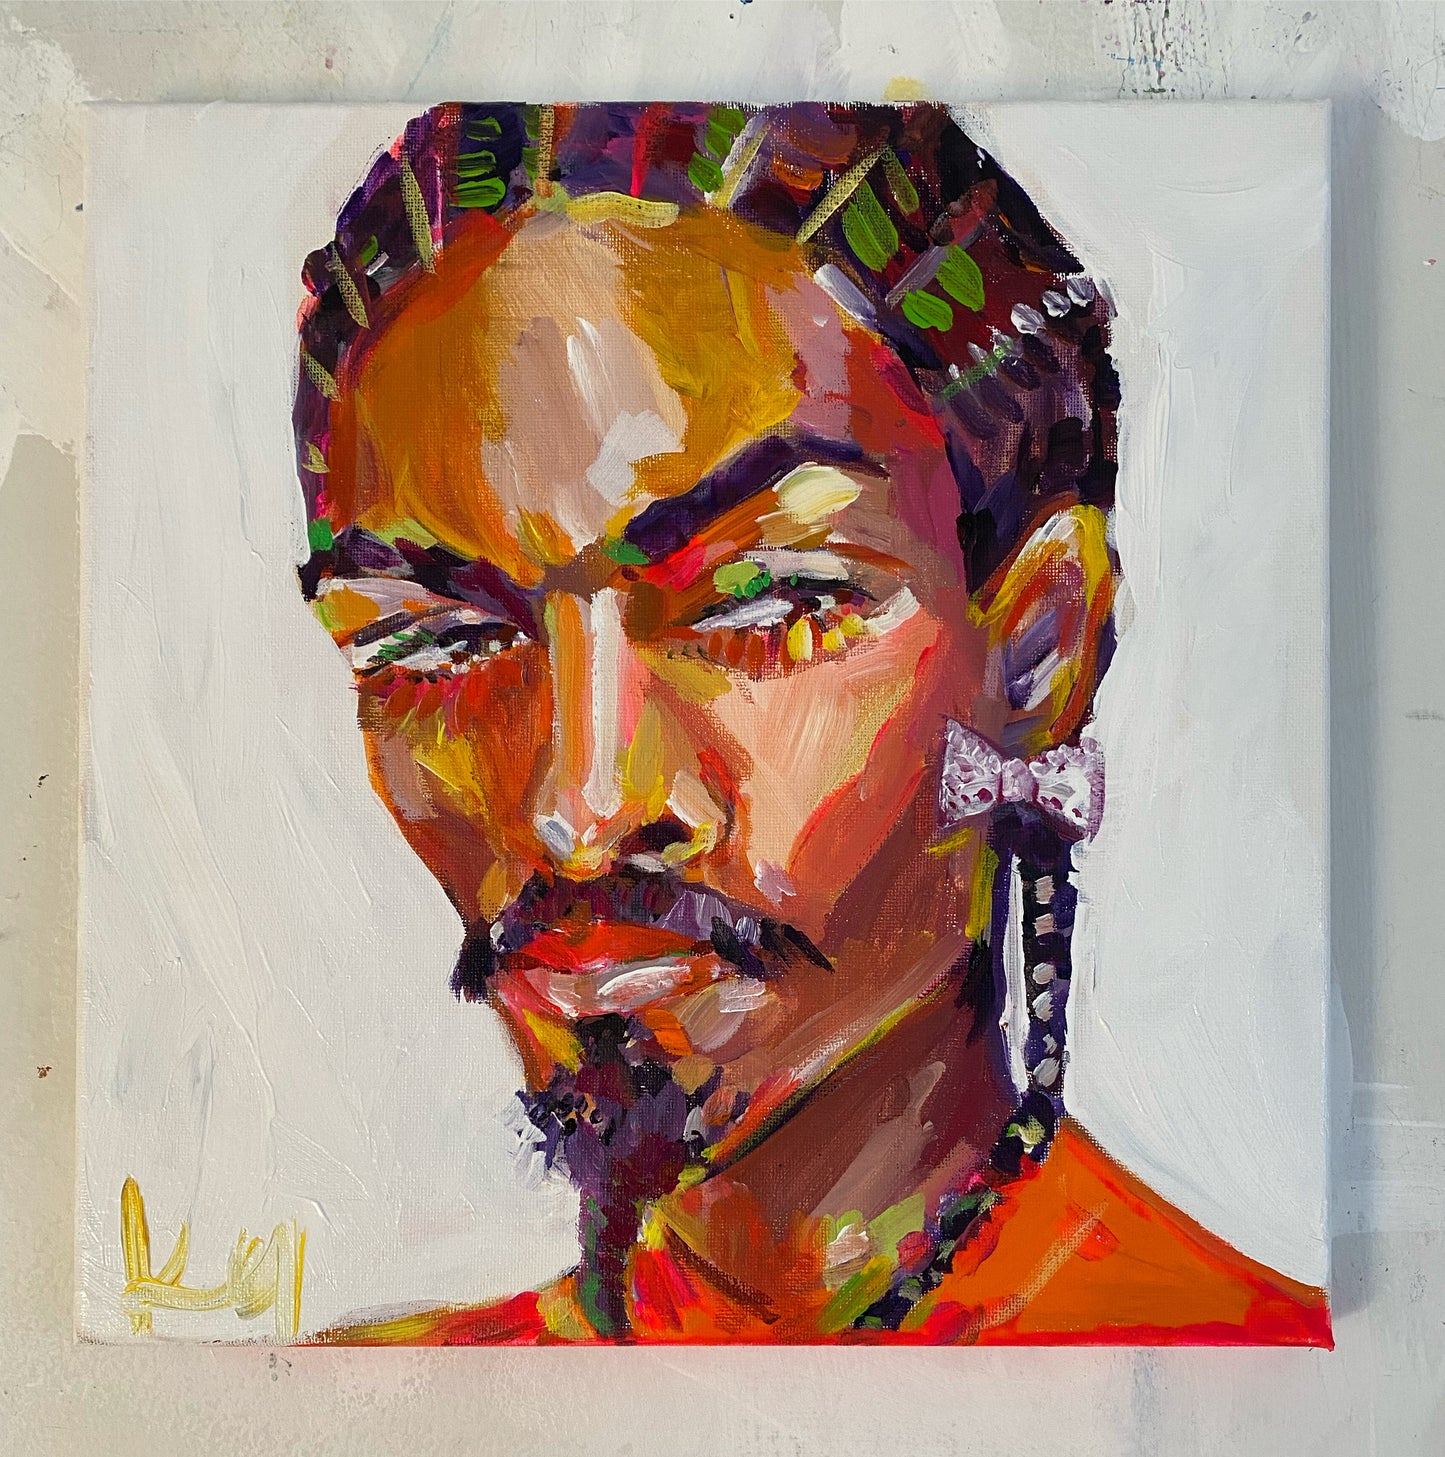 Snoop.